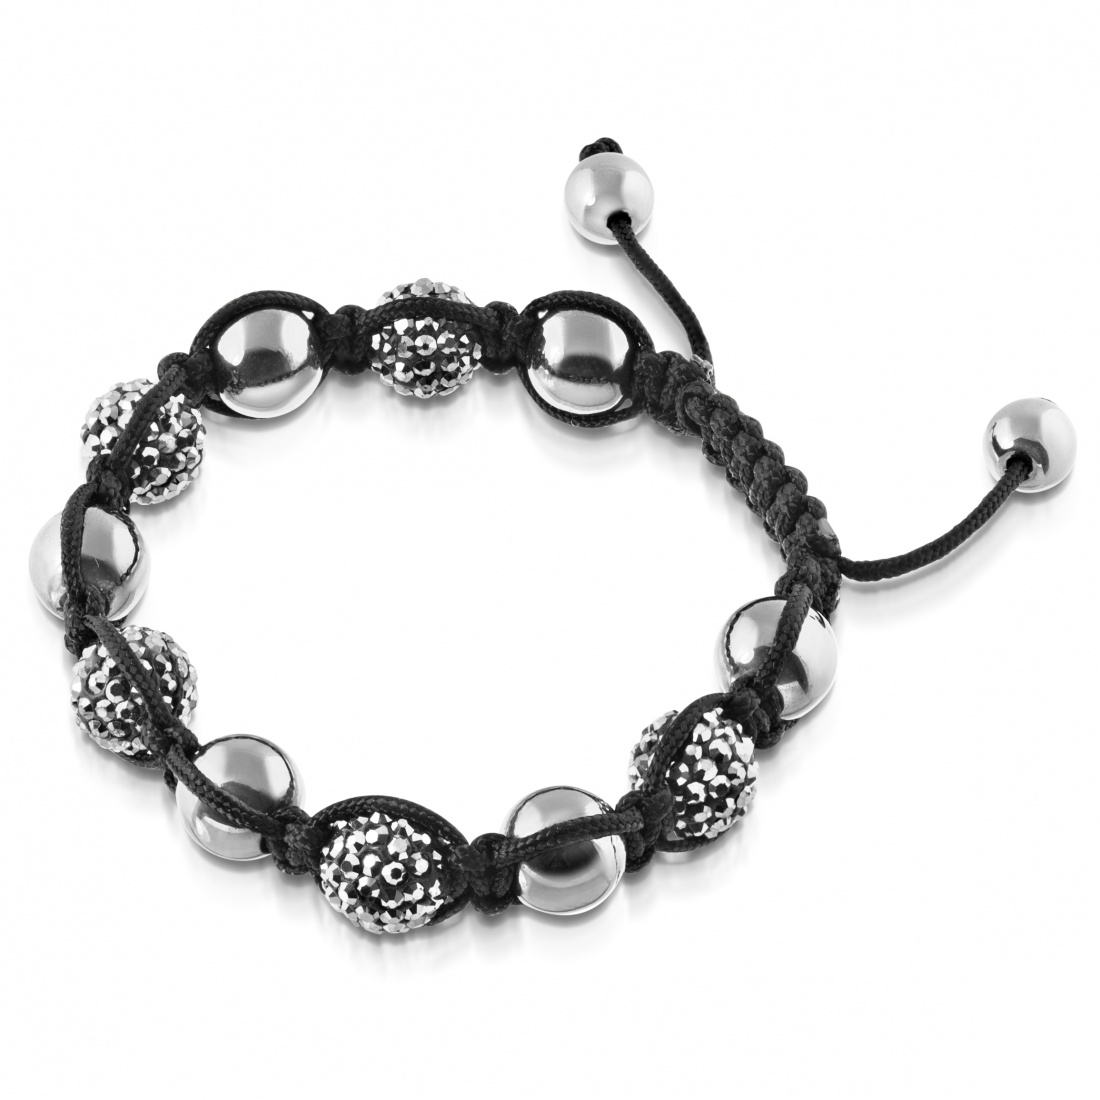 Shamballa Bracelet, Black with Crystal Beads